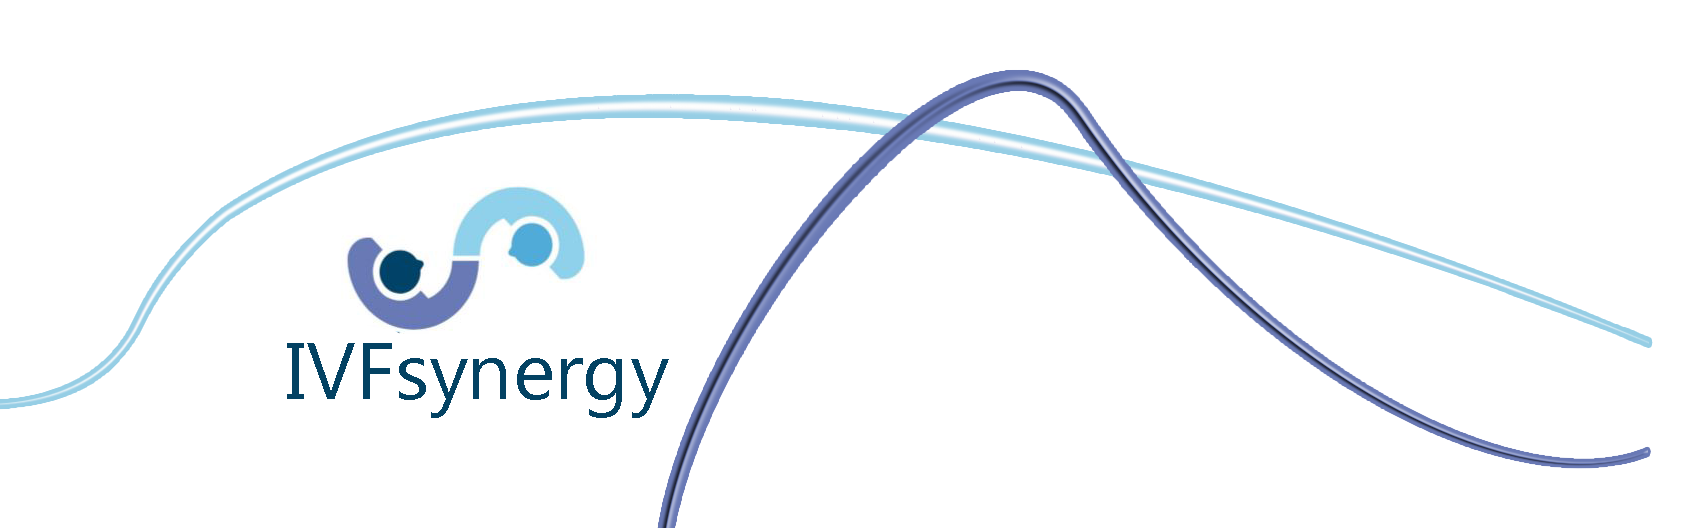 IVFsynergy Logo with Swish